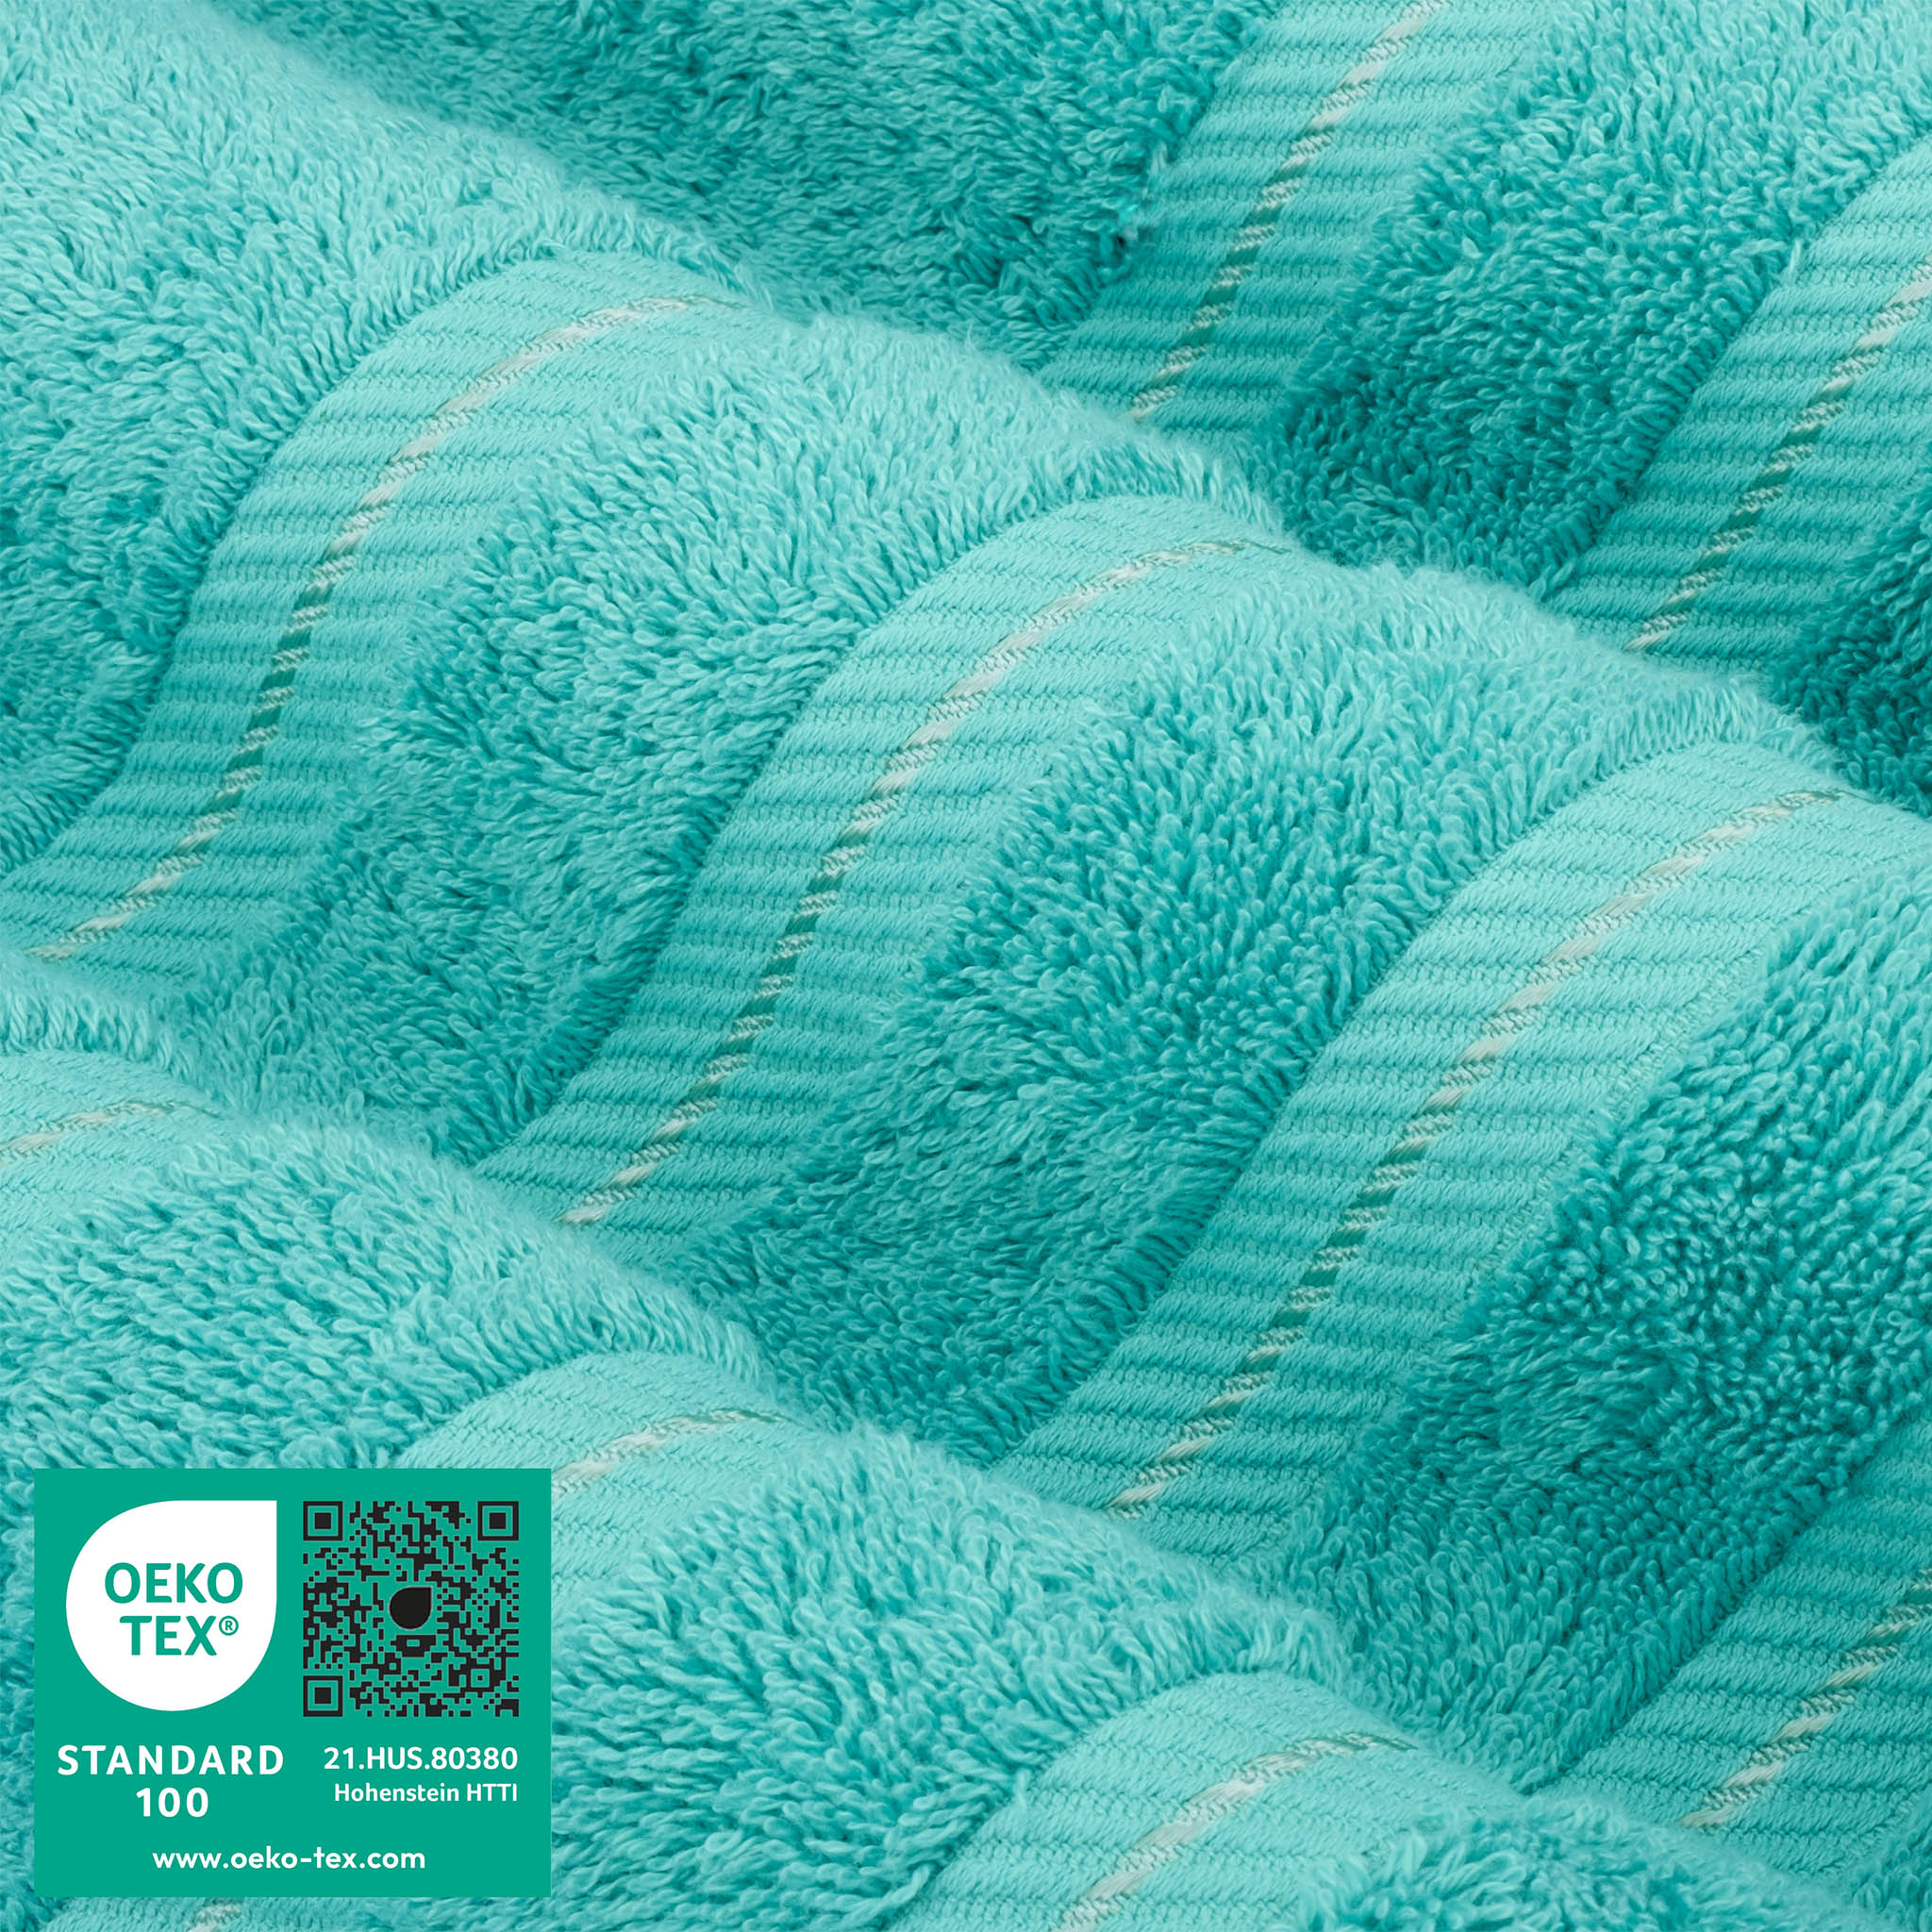 American Soft Linen 100% Turkish Cotton 4 Pack Bath Towel Set Wholesale turquoise-blue-3